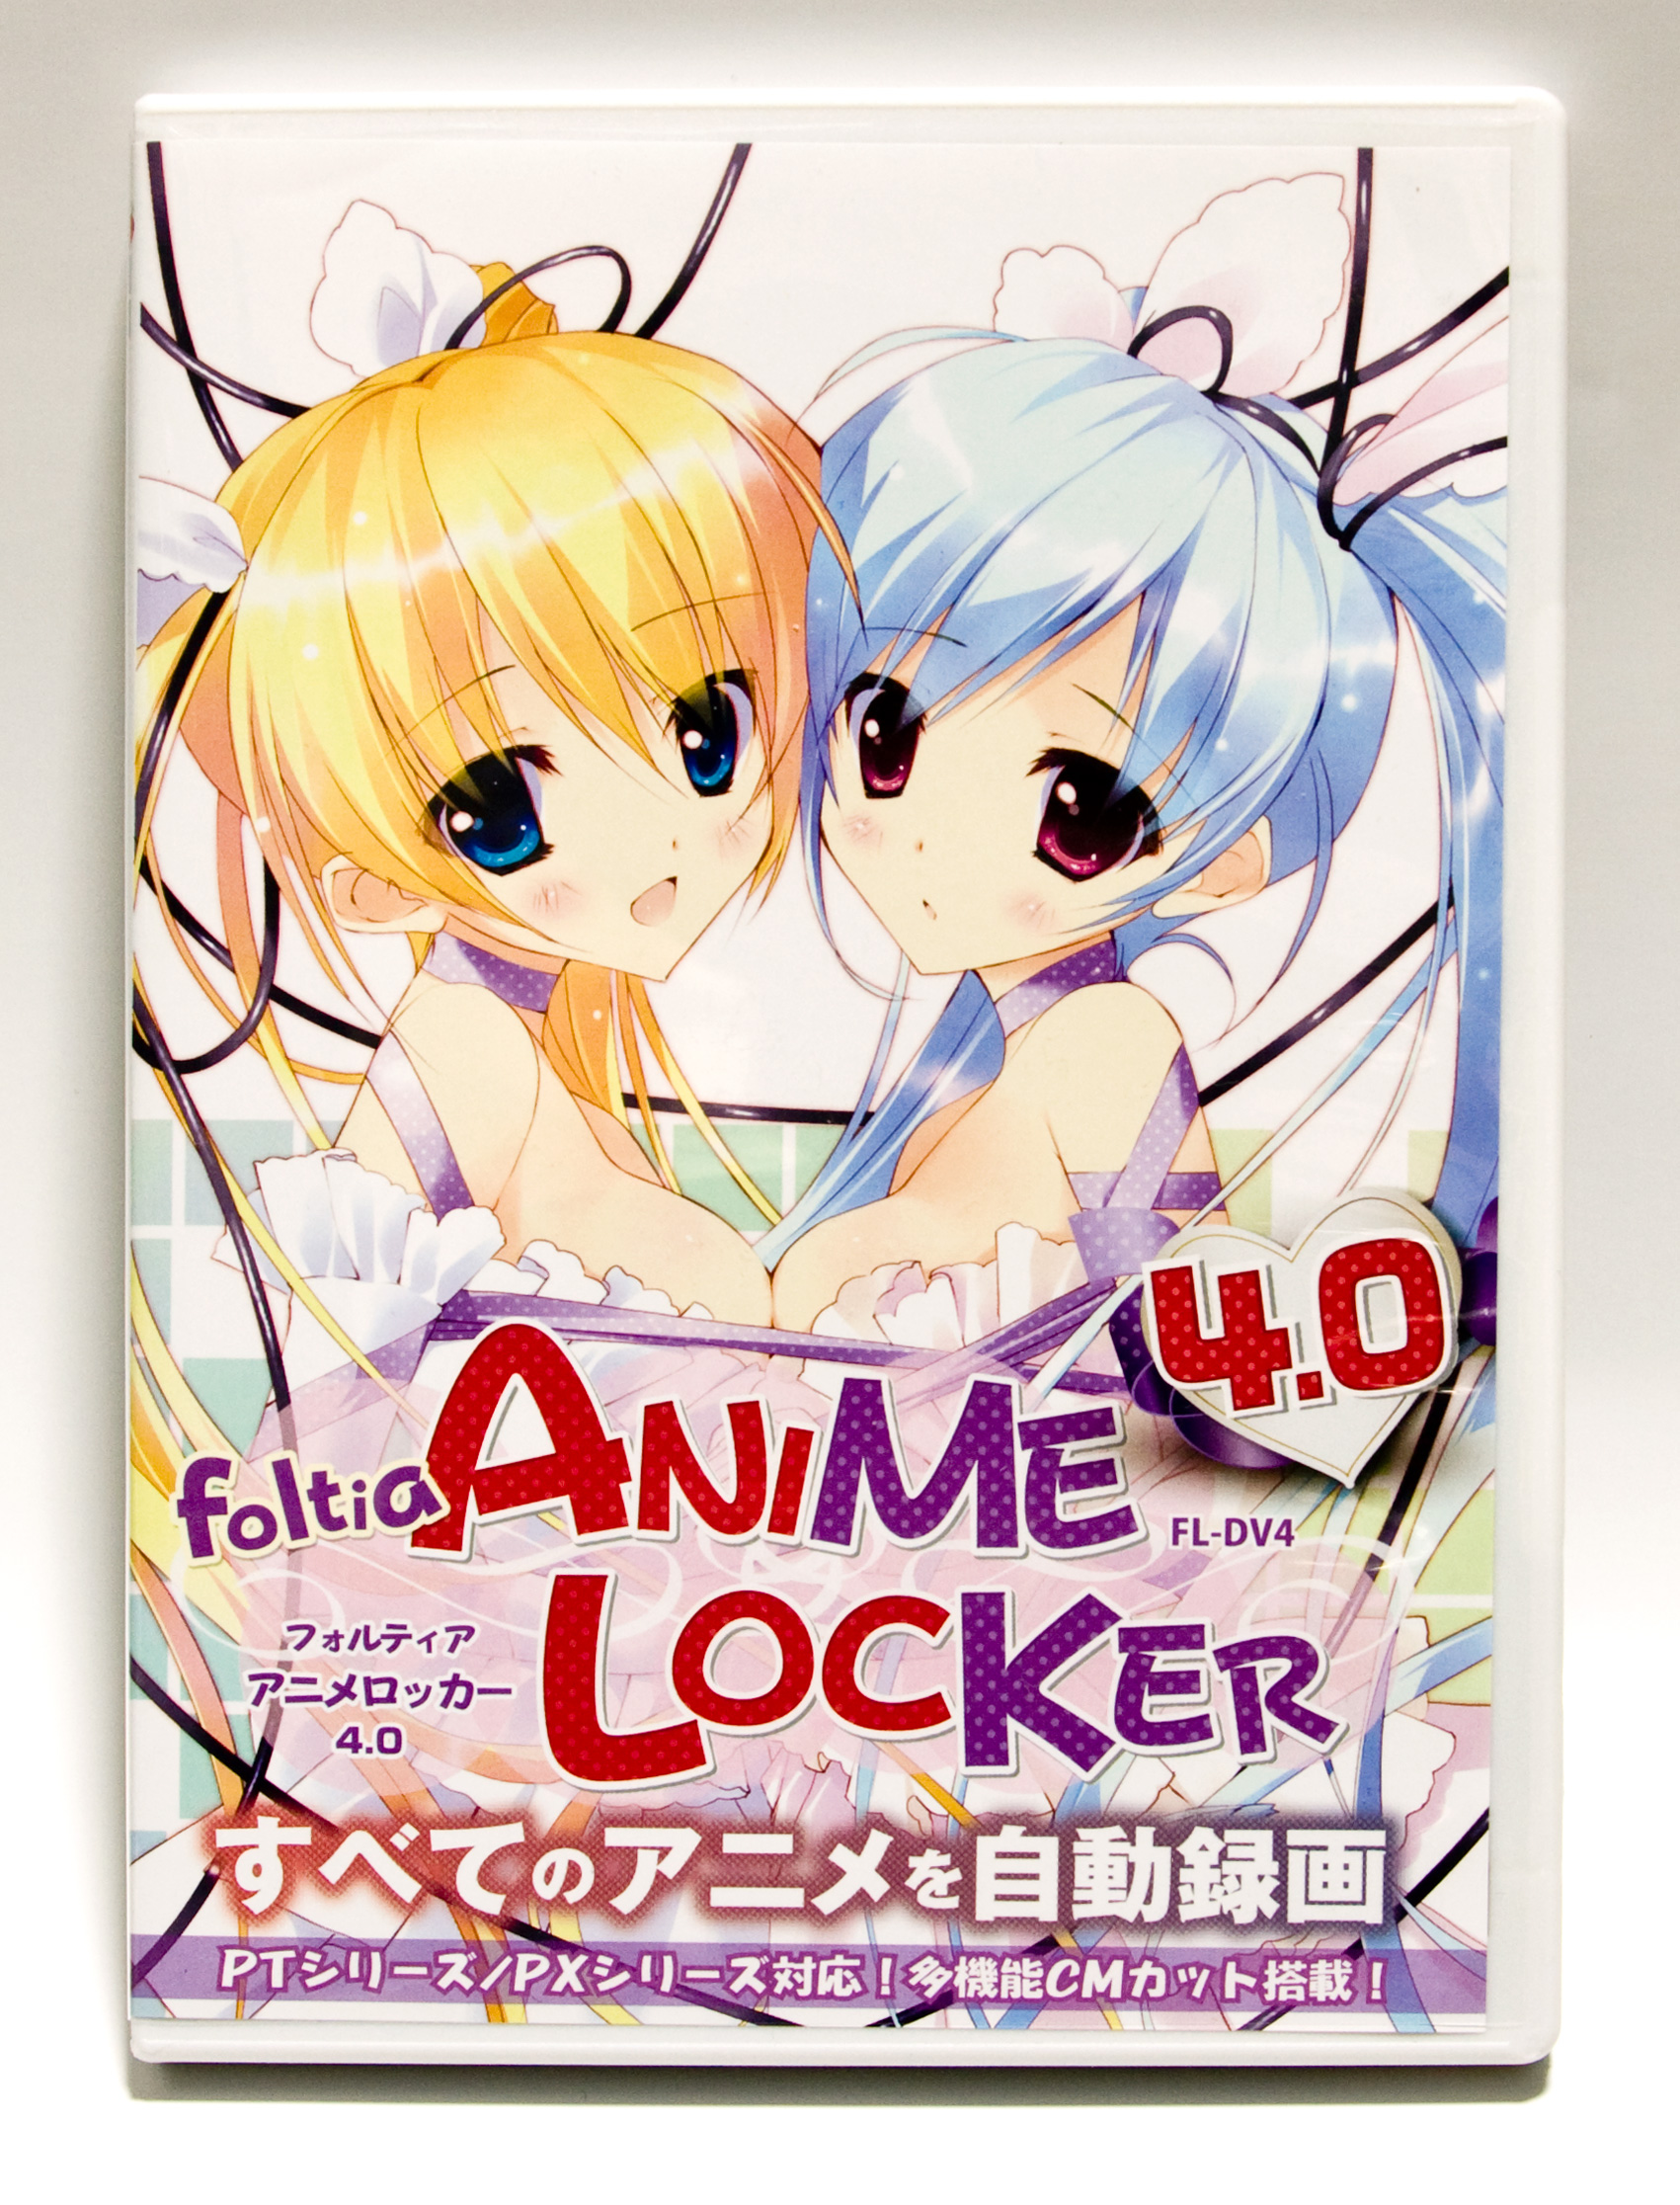 Foltia Foltia Anime Locker 4 0 Fl Dv4 ソフトウェア Dvd版 製品詳細 パソコンshopアーク Ark